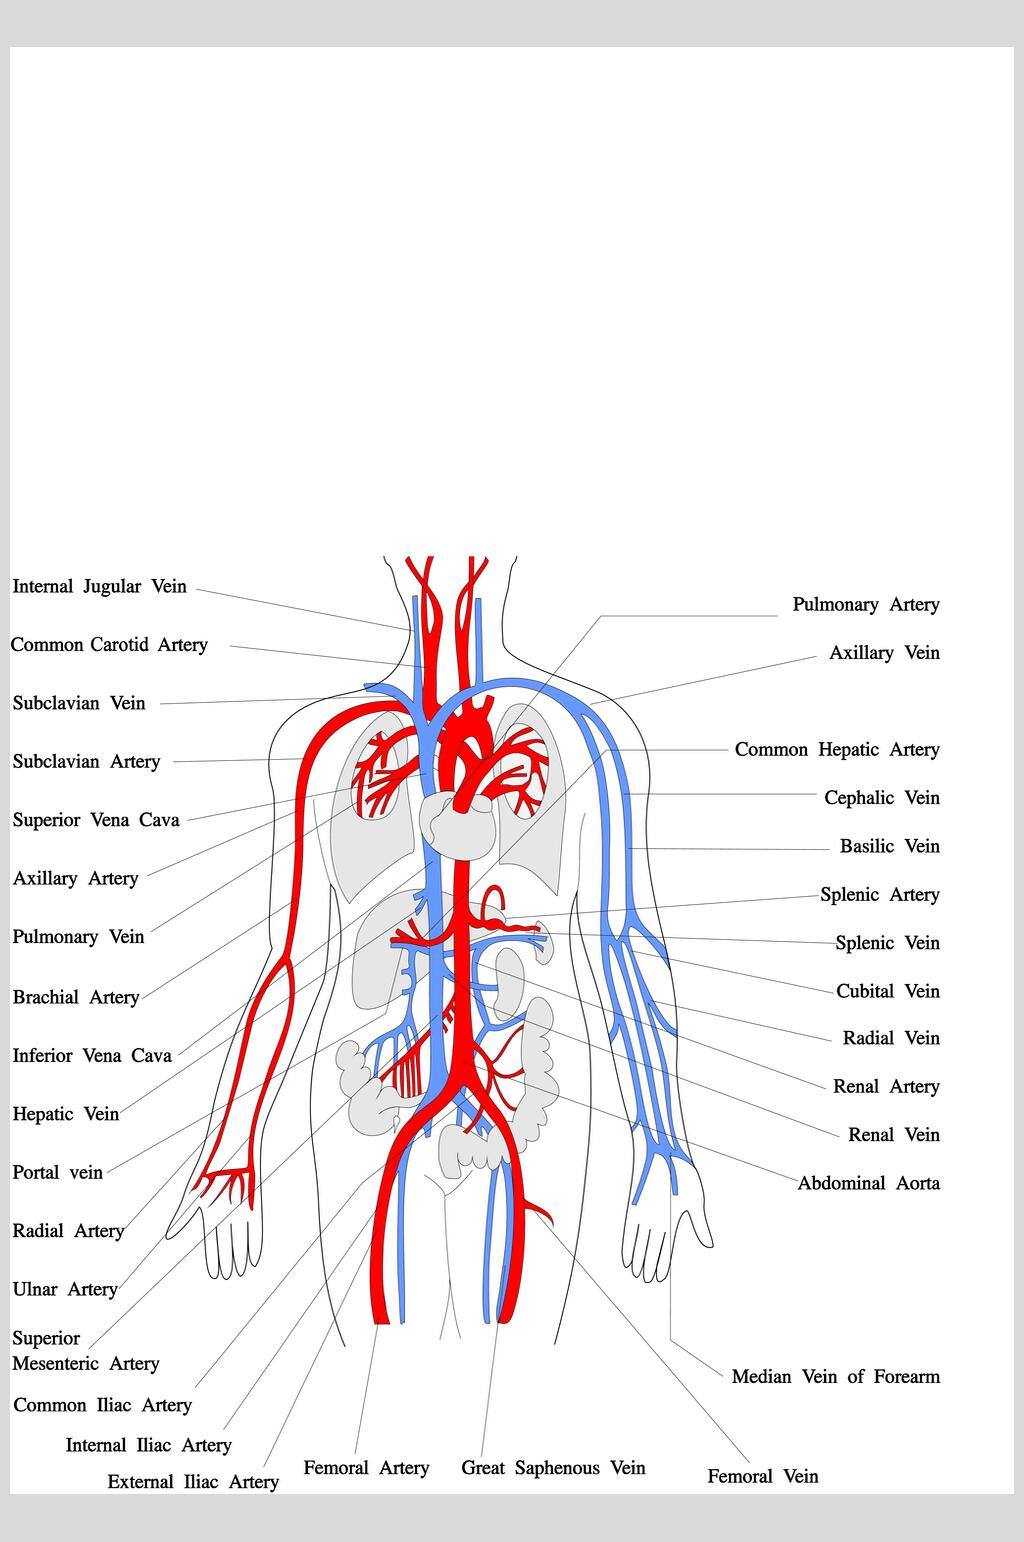 全身动脉图解剖图图片